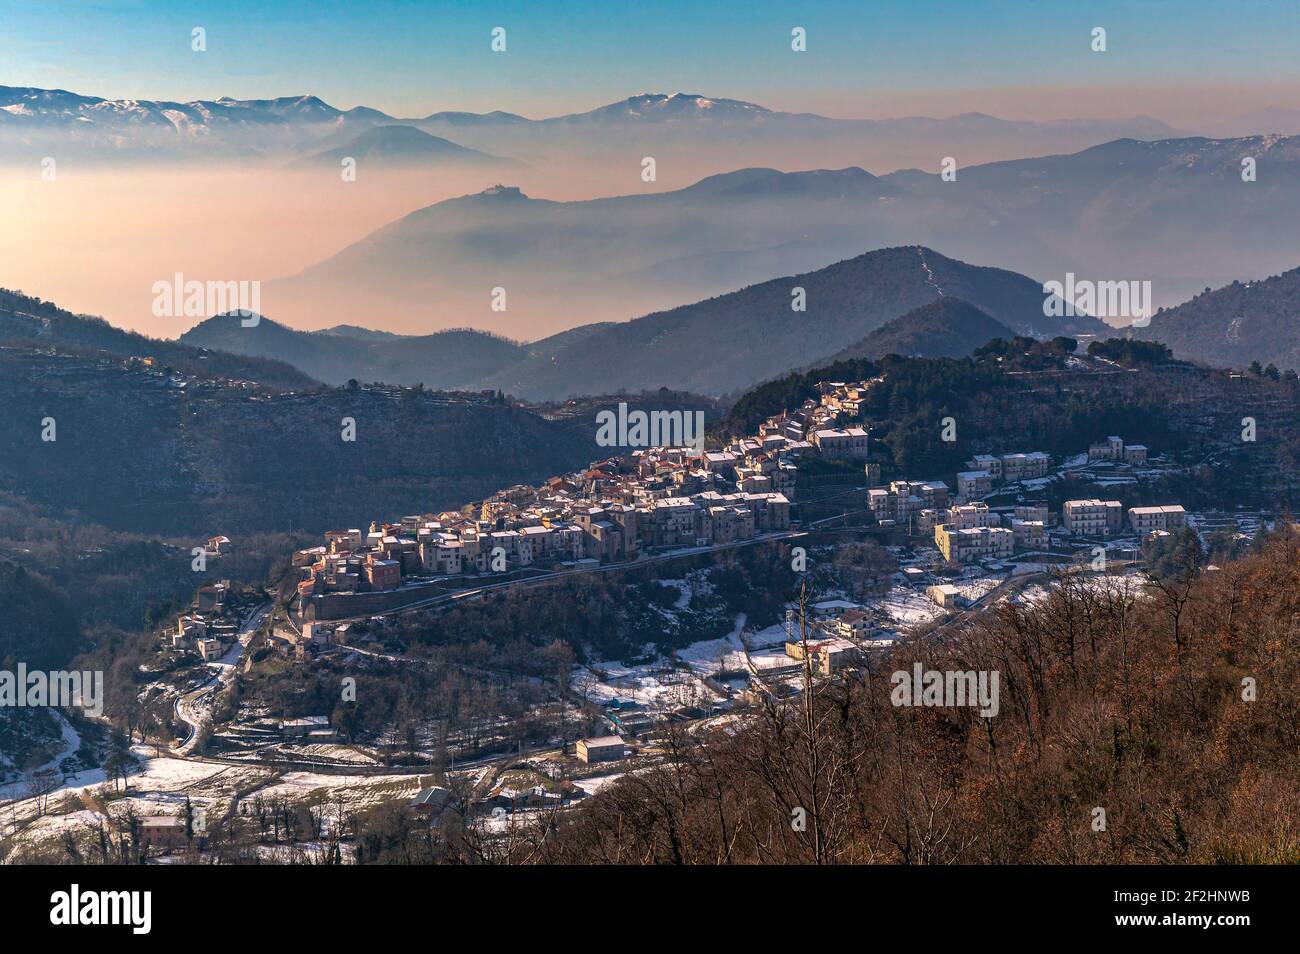 Vue de dessus d'une ville de montagne en Latium. Les brouillards entre les vallées sont le fond. Vallerotonda, province de Frosinone, Latium, Italie, Europe Banque D'Images